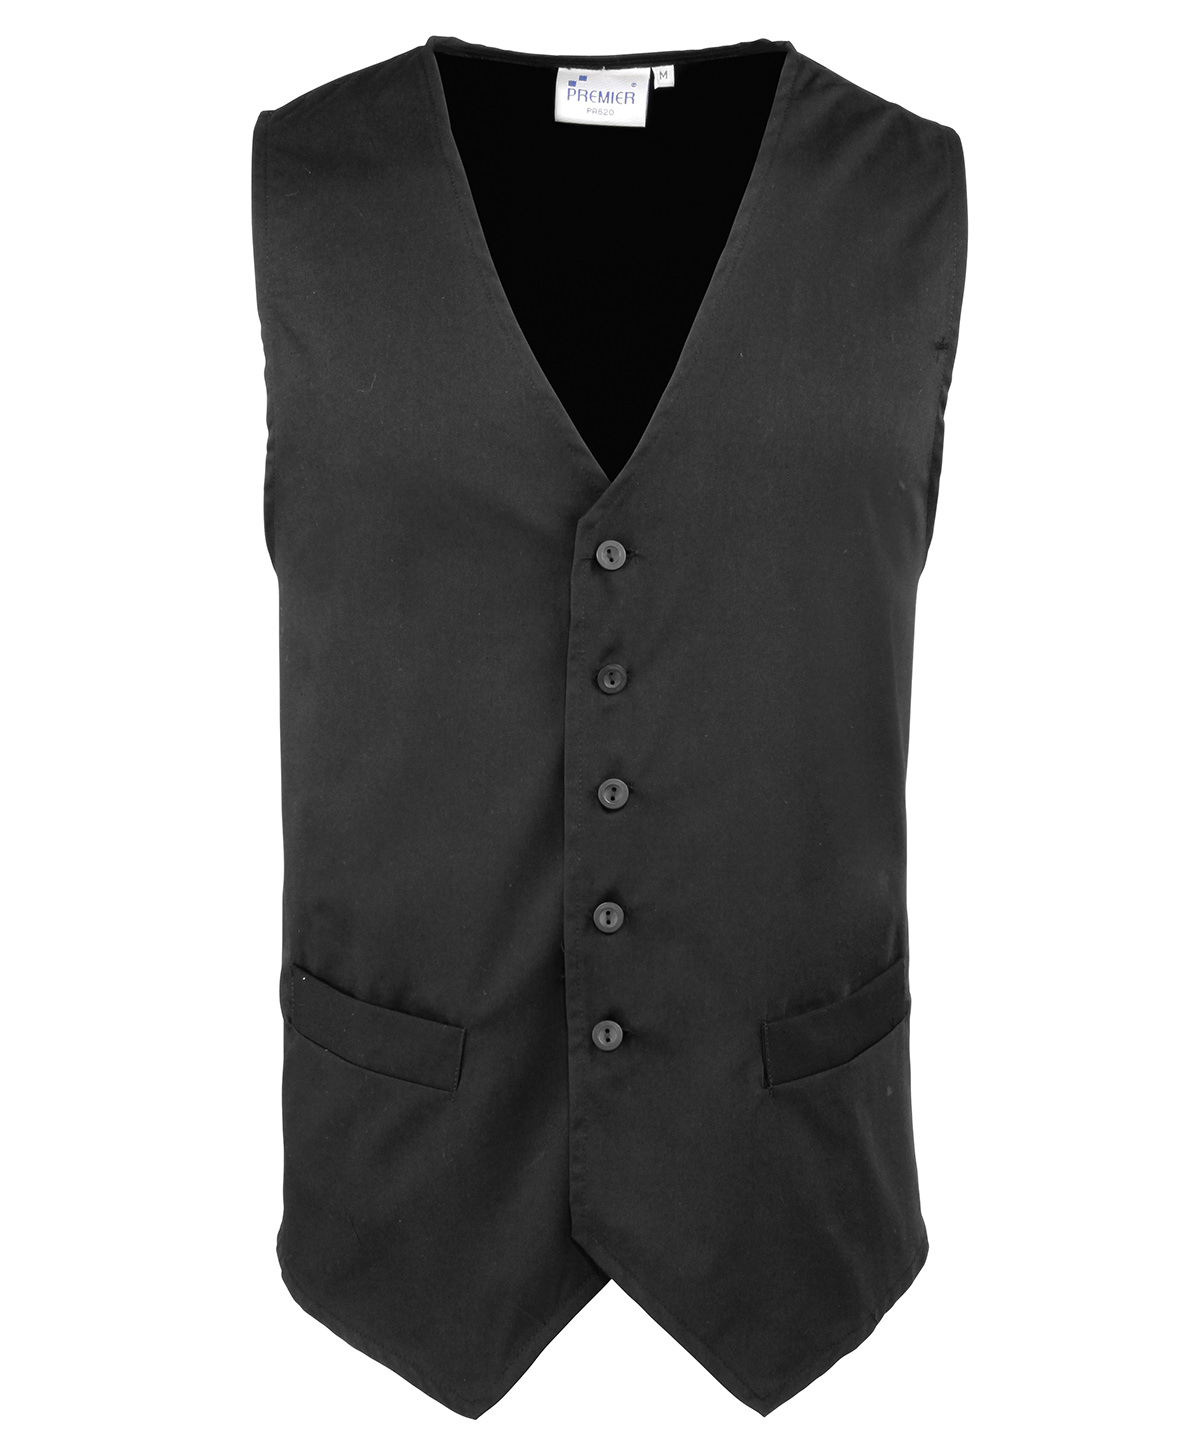 Hospitality Waistcoat Black Size 2XLarge